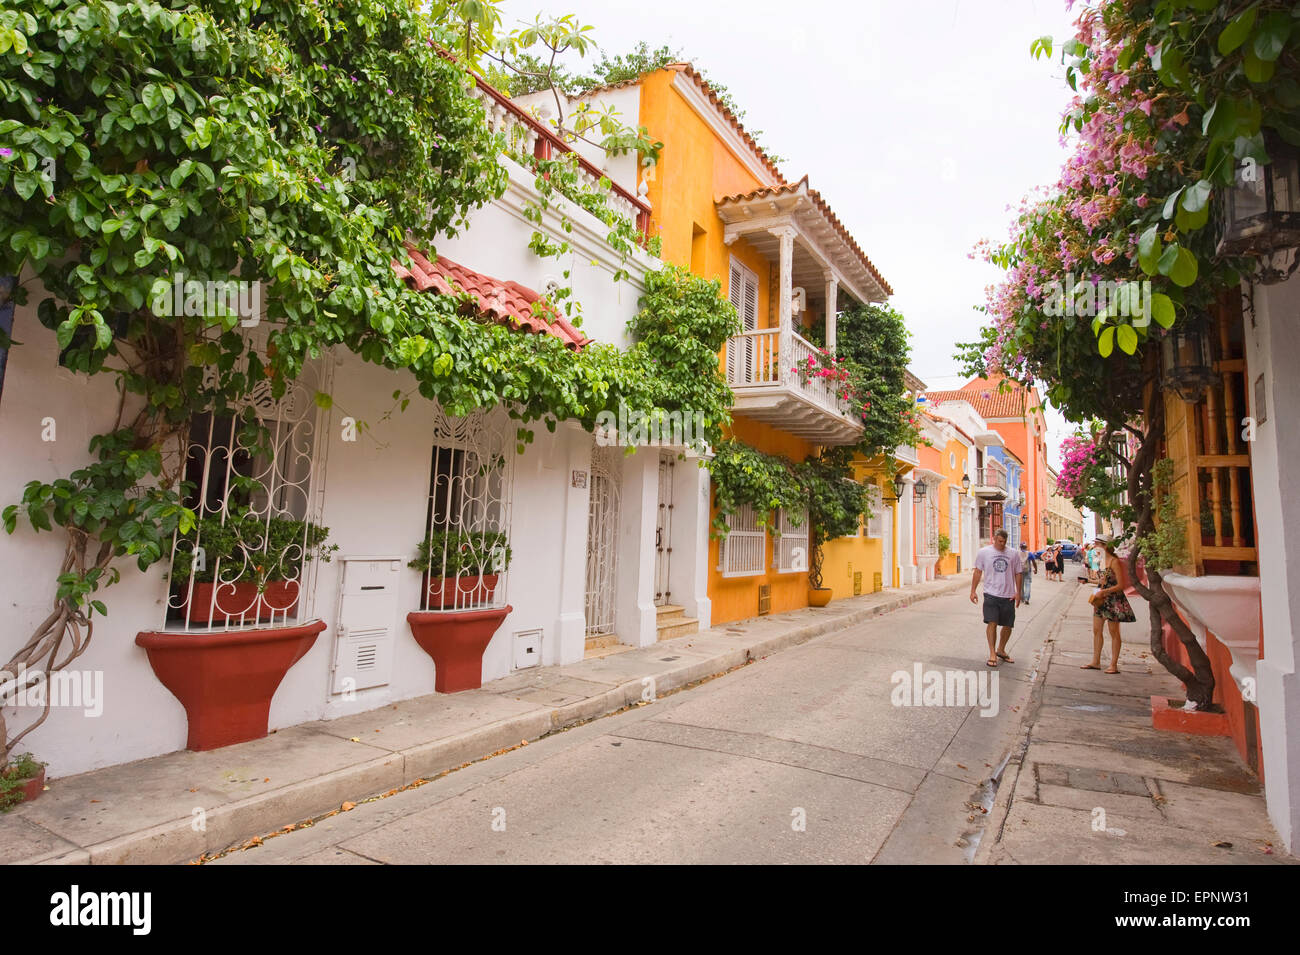 Maisons couvertes de fleurs et d'un balcon dans une rue à Cartagena, Colombie, Amérique du Sud Banque D'Images